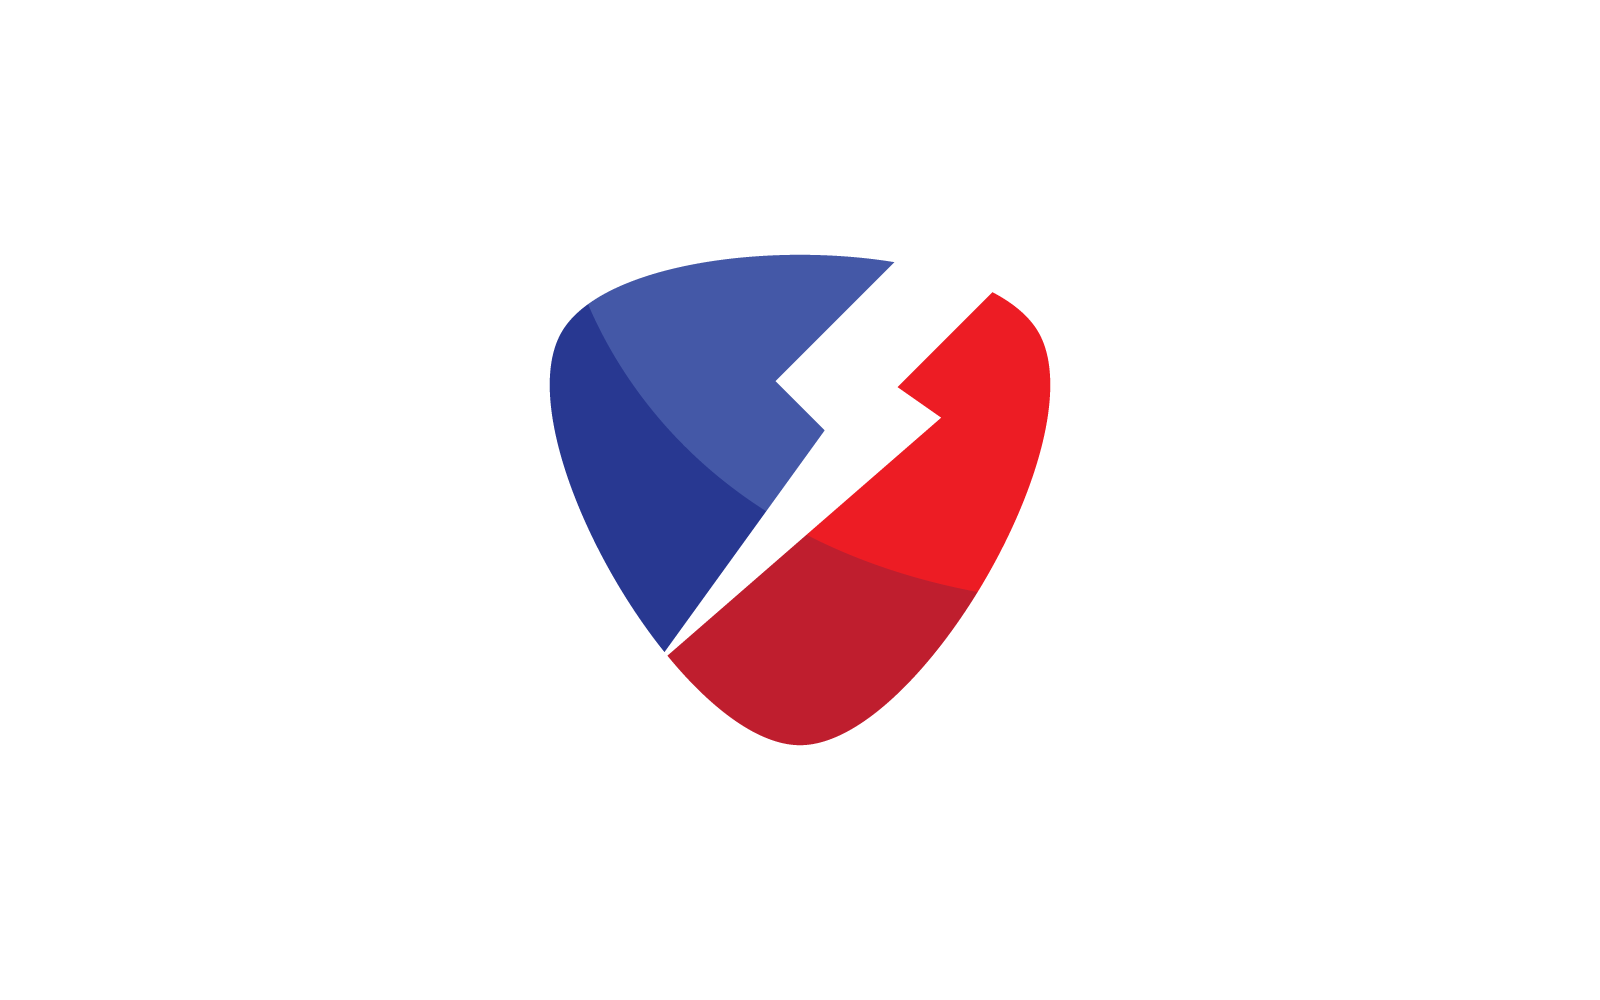 Power lightning power energy design vector logo template Logo Template